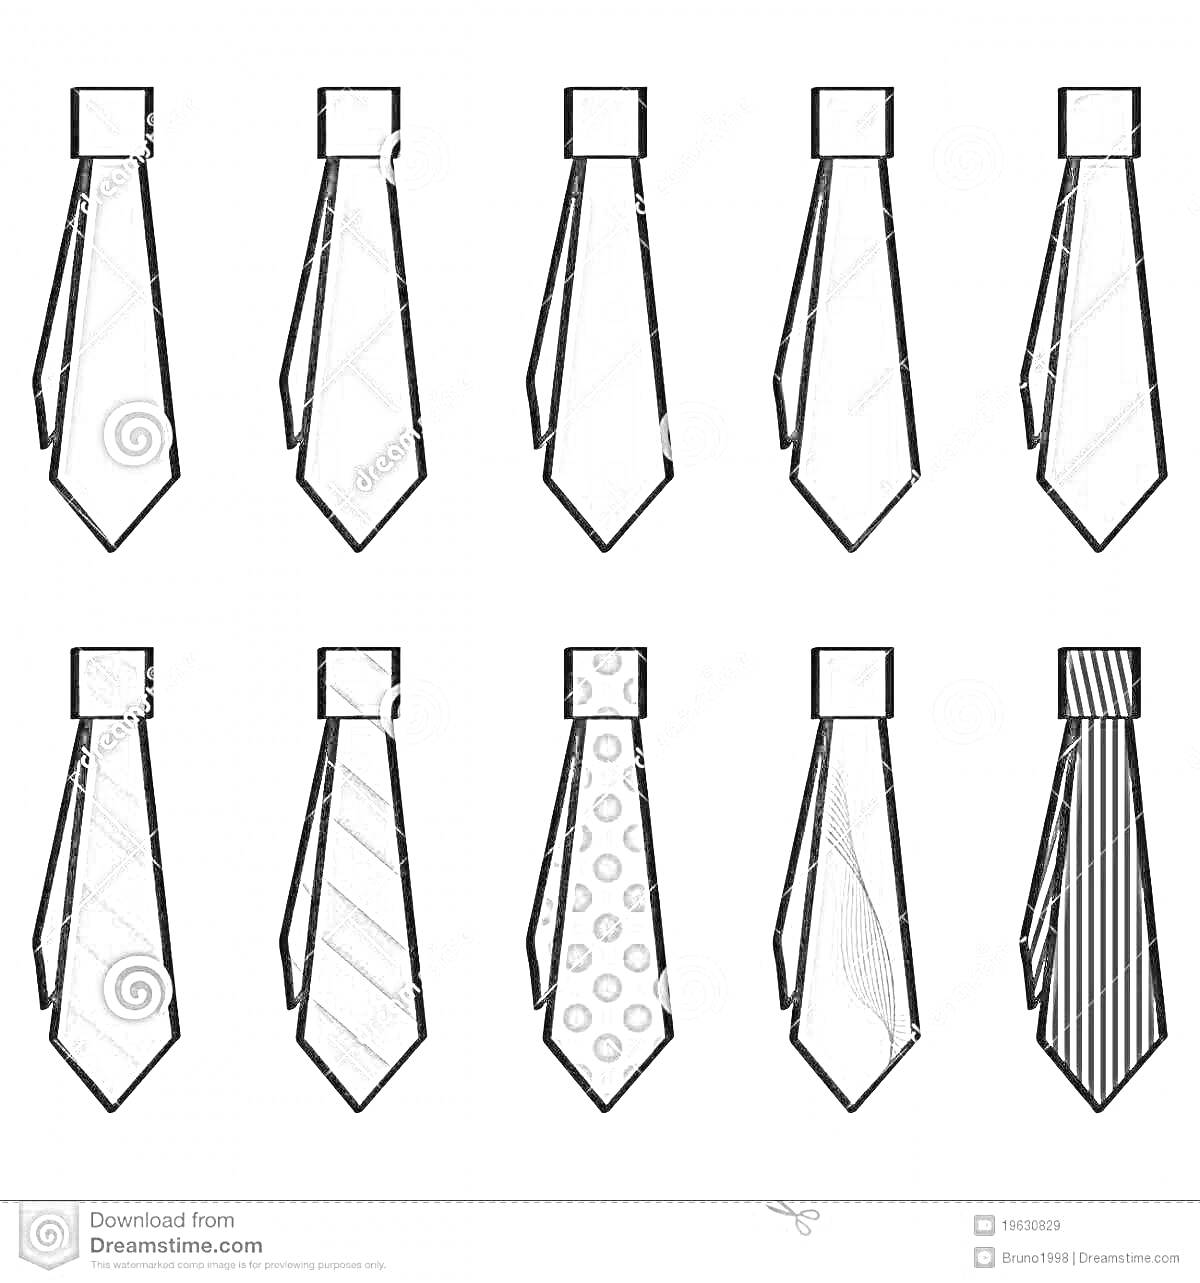 Раскраска Коллекция галстуков для папы: однотонные, полосатые, в горошек